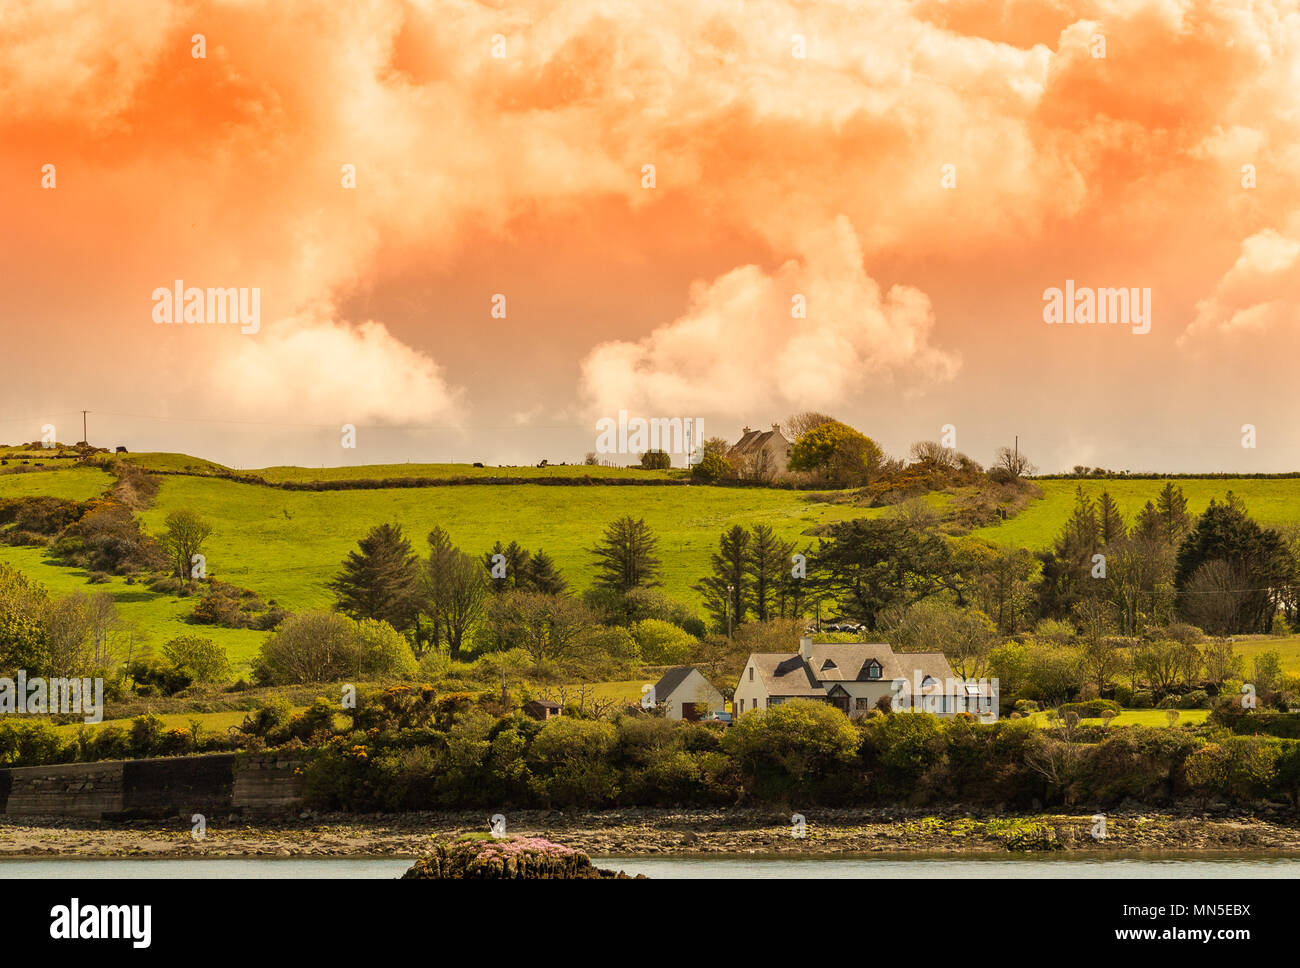 Abend Landschaft im County Cork, Irland mit dem Sonnenuntergang über den Wolken Beleuchtung die Landschaft scheint. Stockfoto